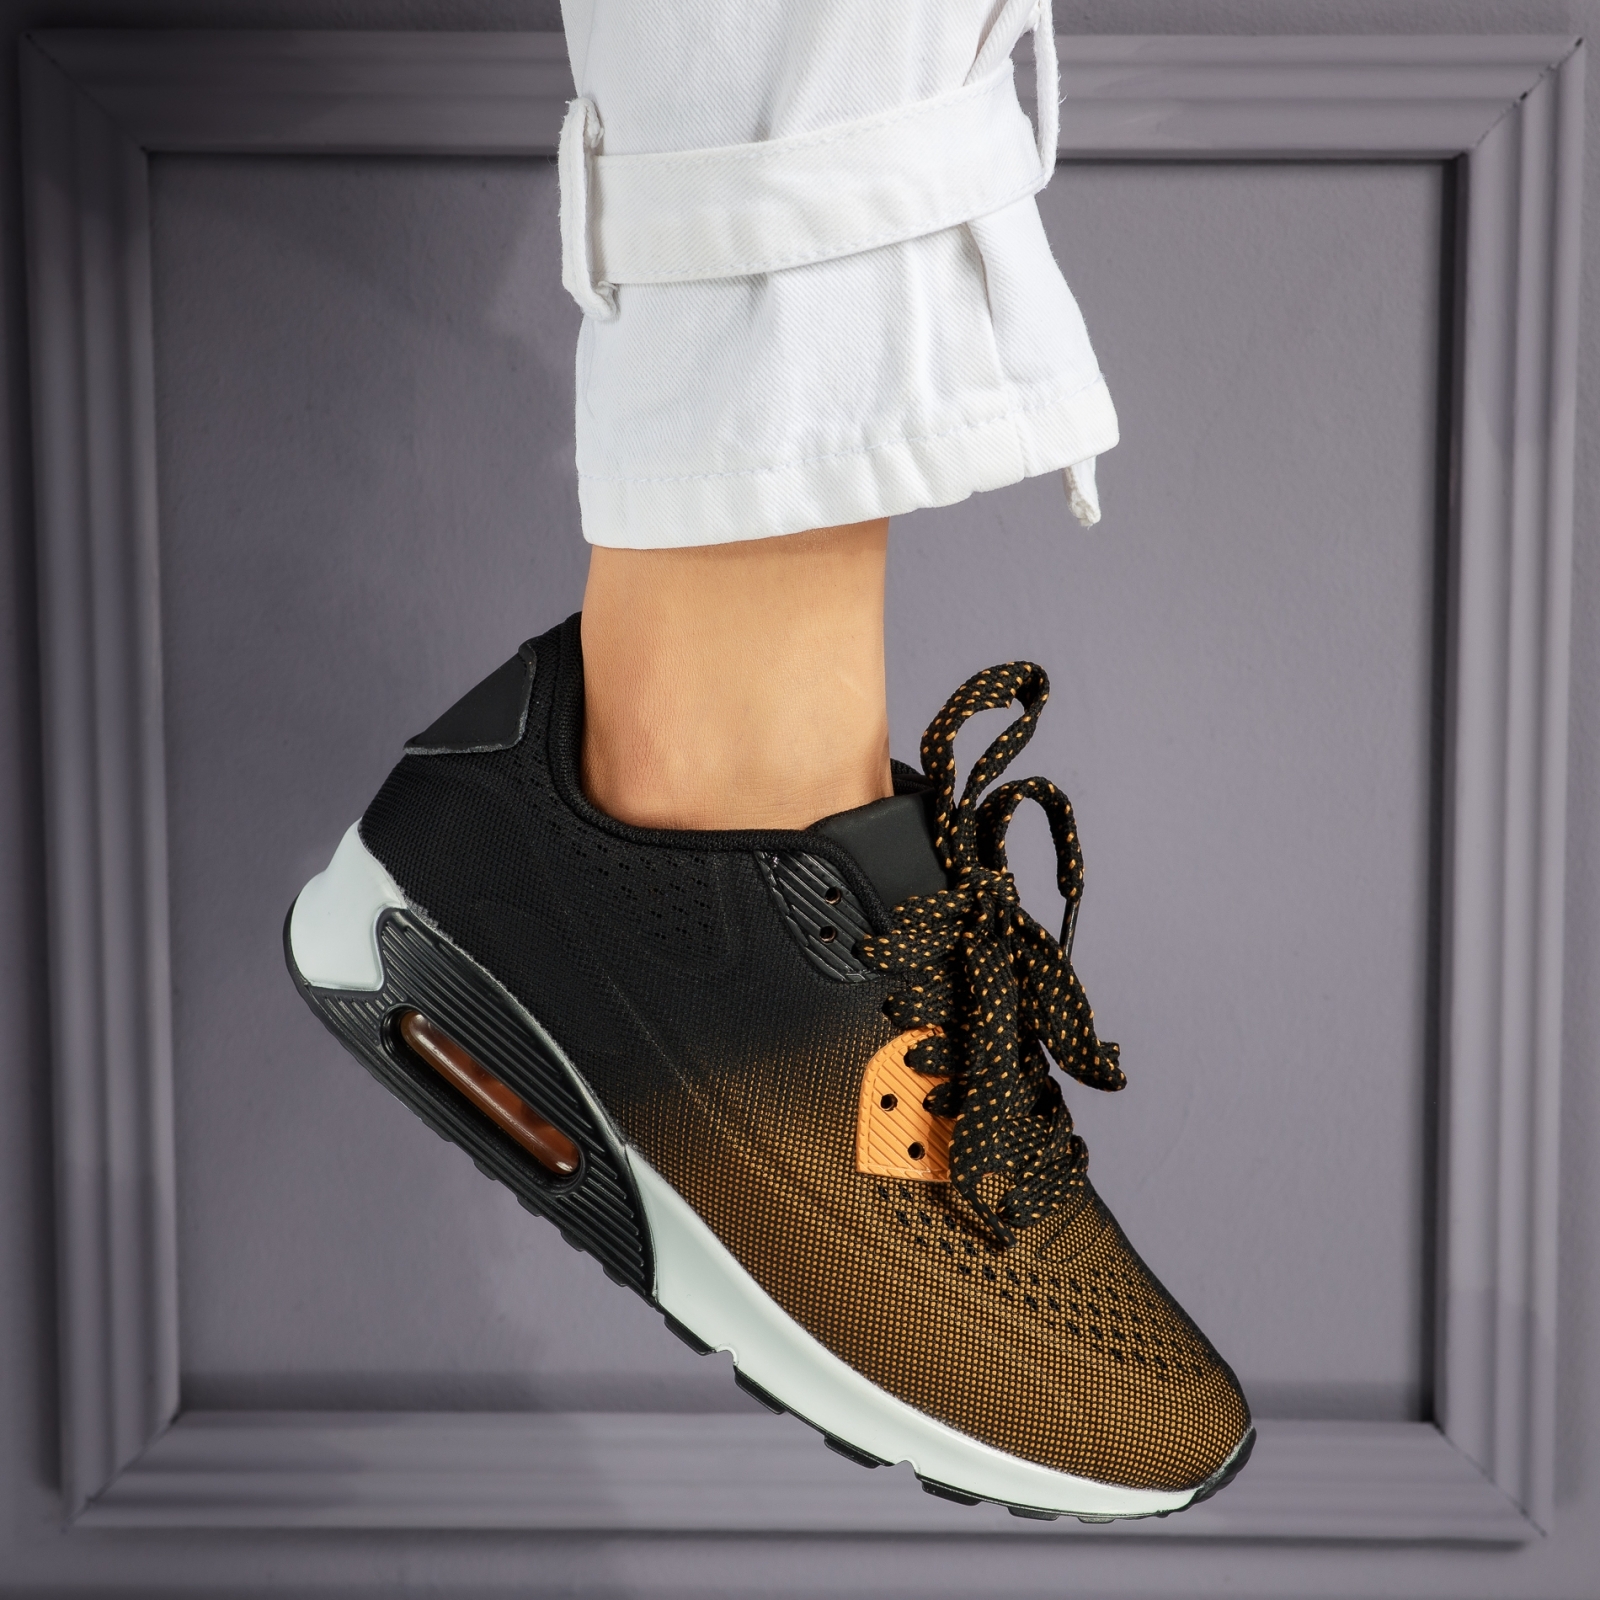 Дамски спортни обувки Lora Gбелинаn/черен #3759M